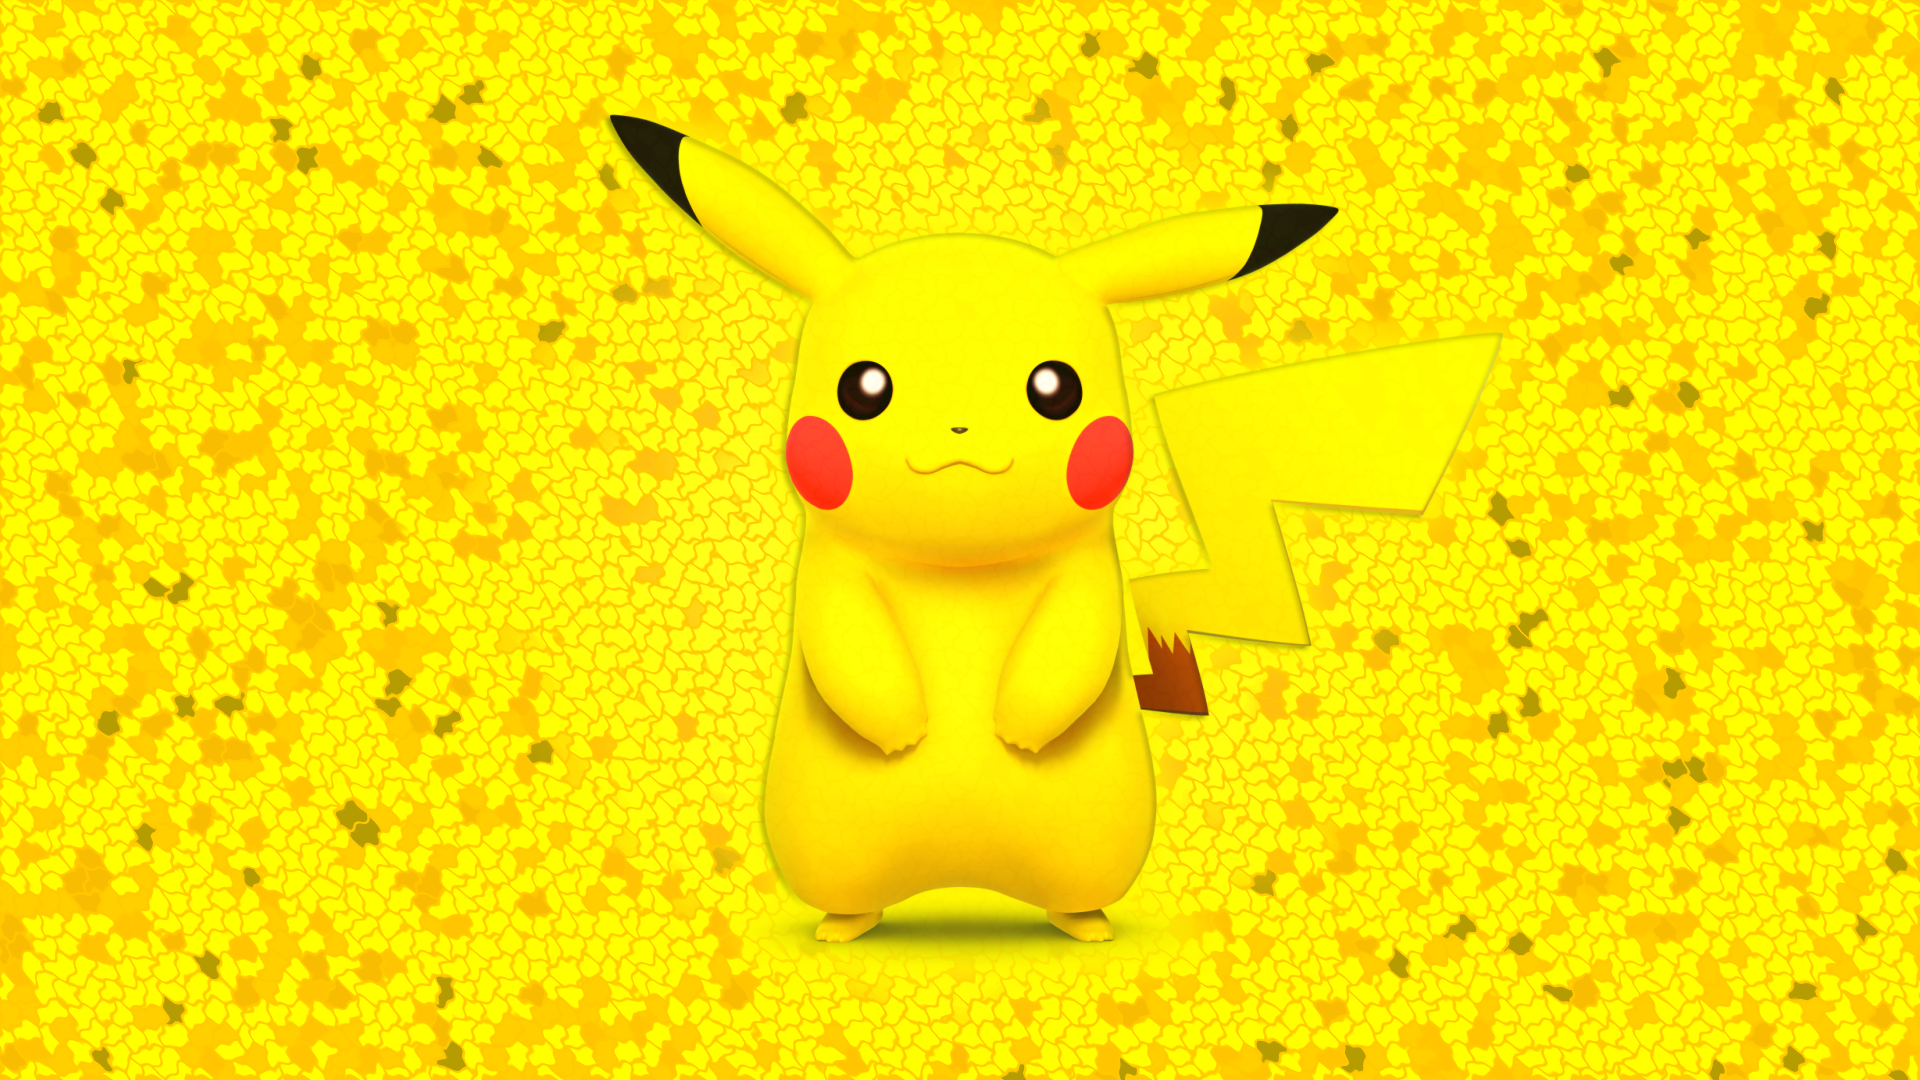 Pikachu Widescreen Wallpaper Wallpaperlepi